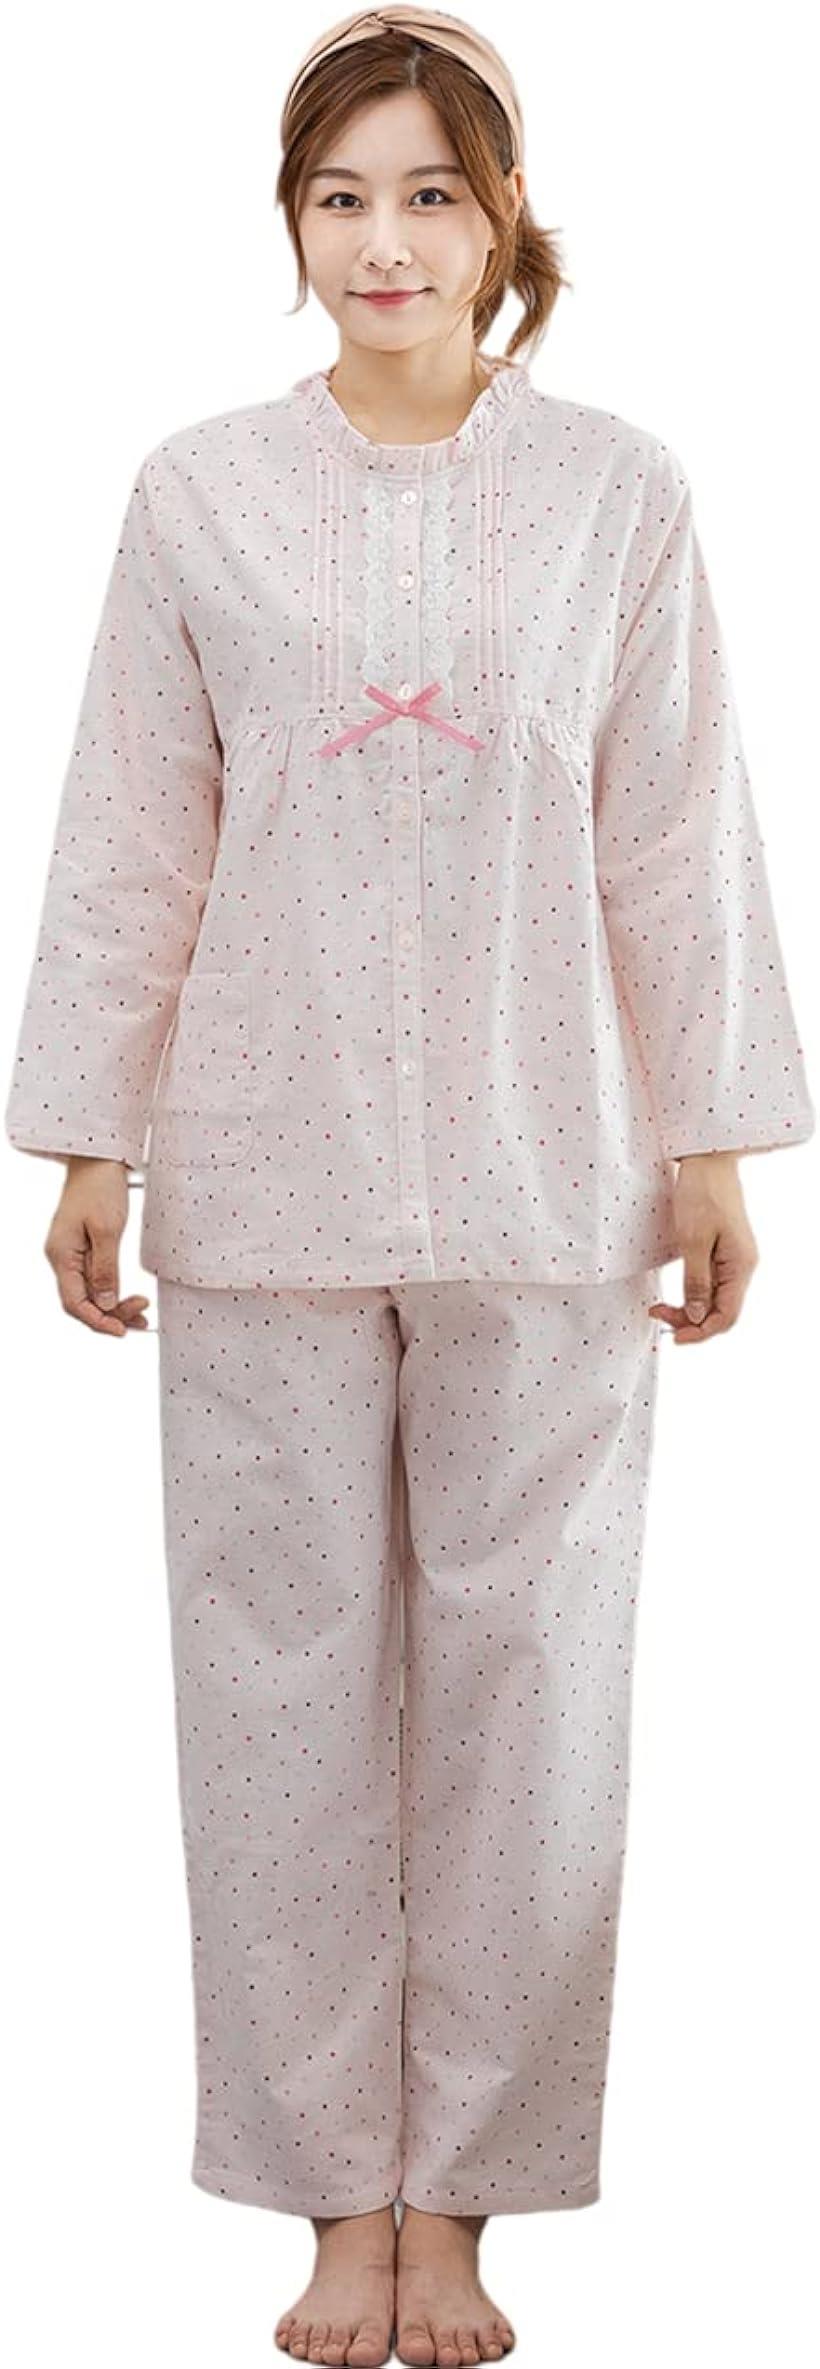 母の日 レディース パジャマ ネルパジャマ 二重フランネル 上下セット ルームウェア( ピンク, L)